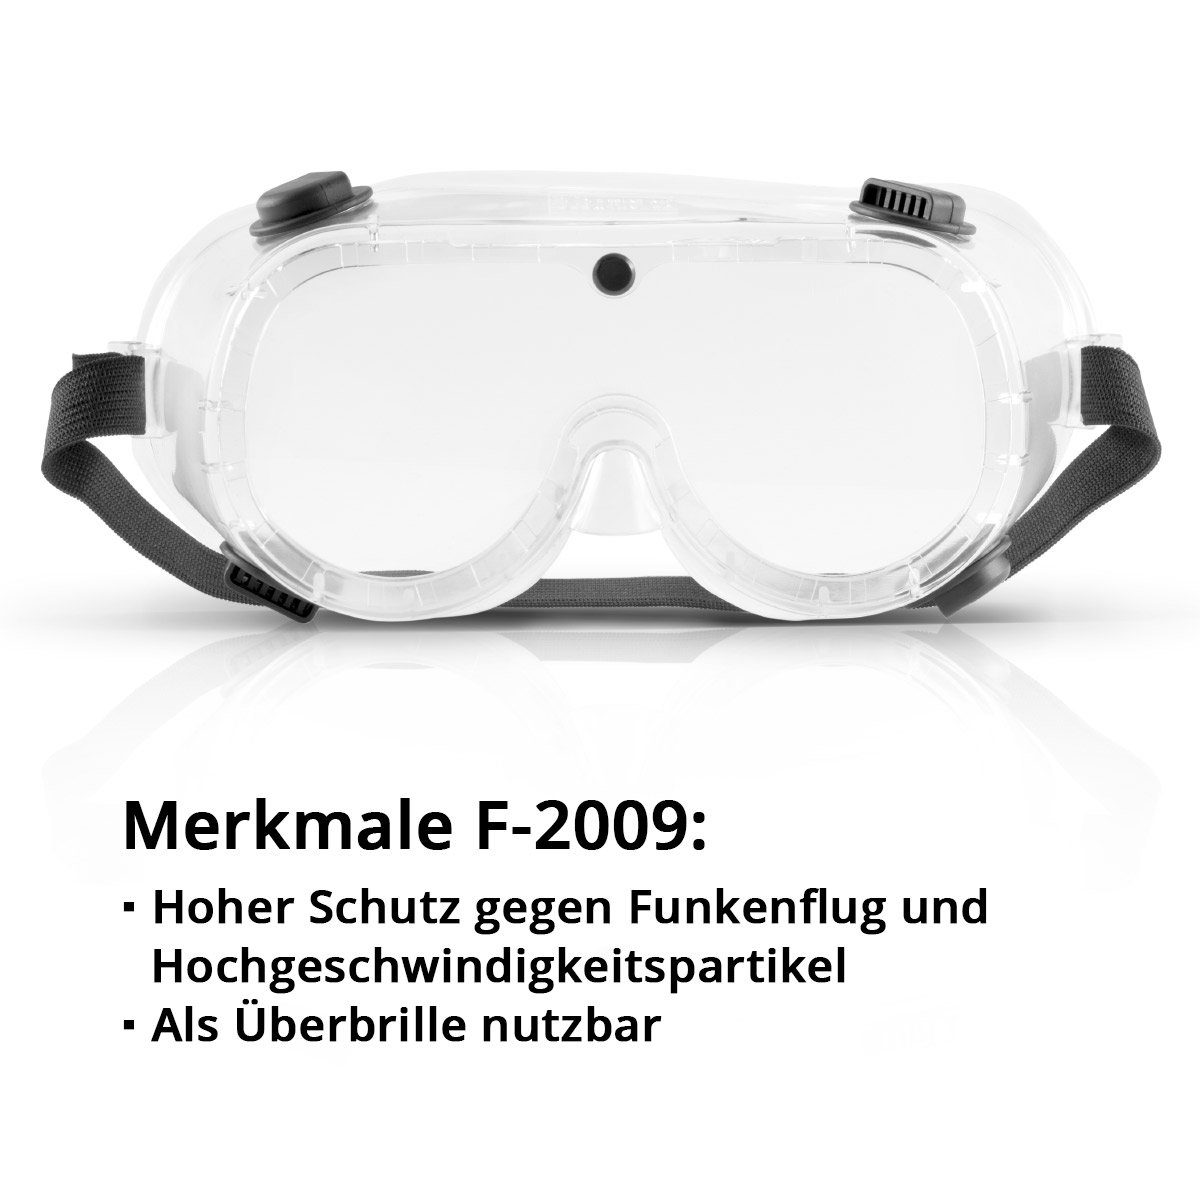 STAHLWERK (Set, Set, Schutzbrillen 2St) Arbeitsschutzbrille